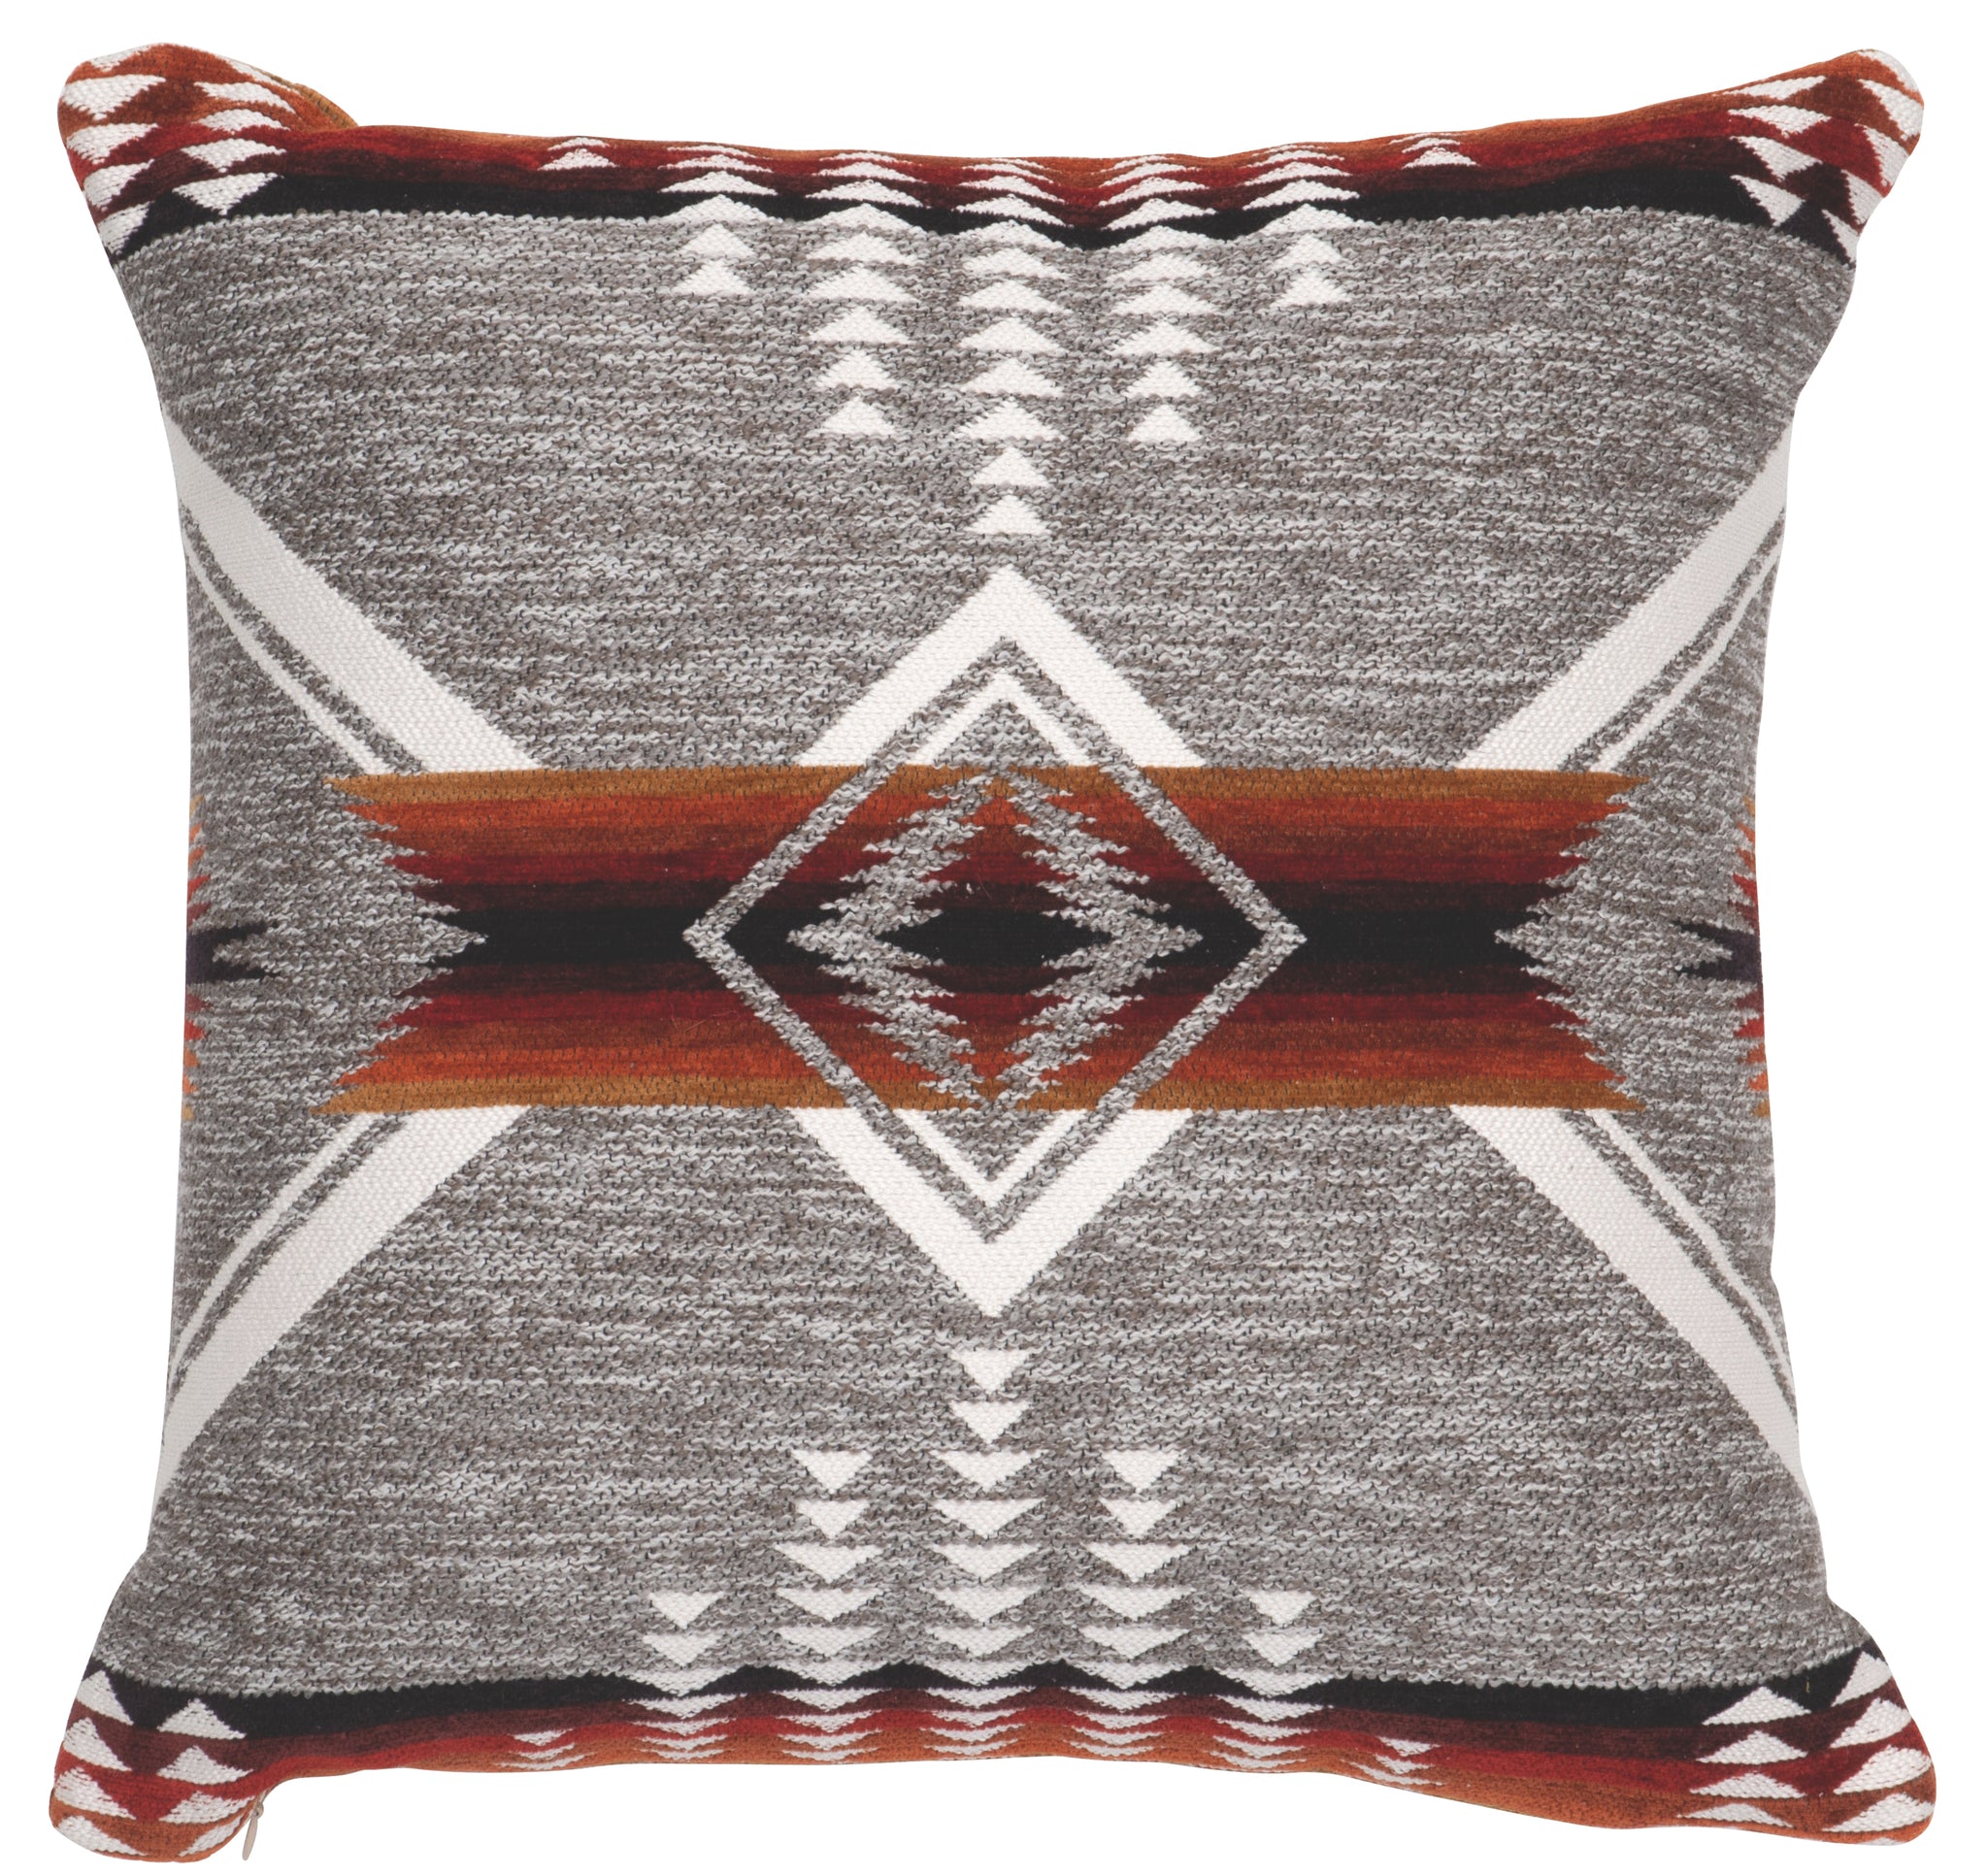 Mesquite Pillow Wooded River - Unique Linens Online